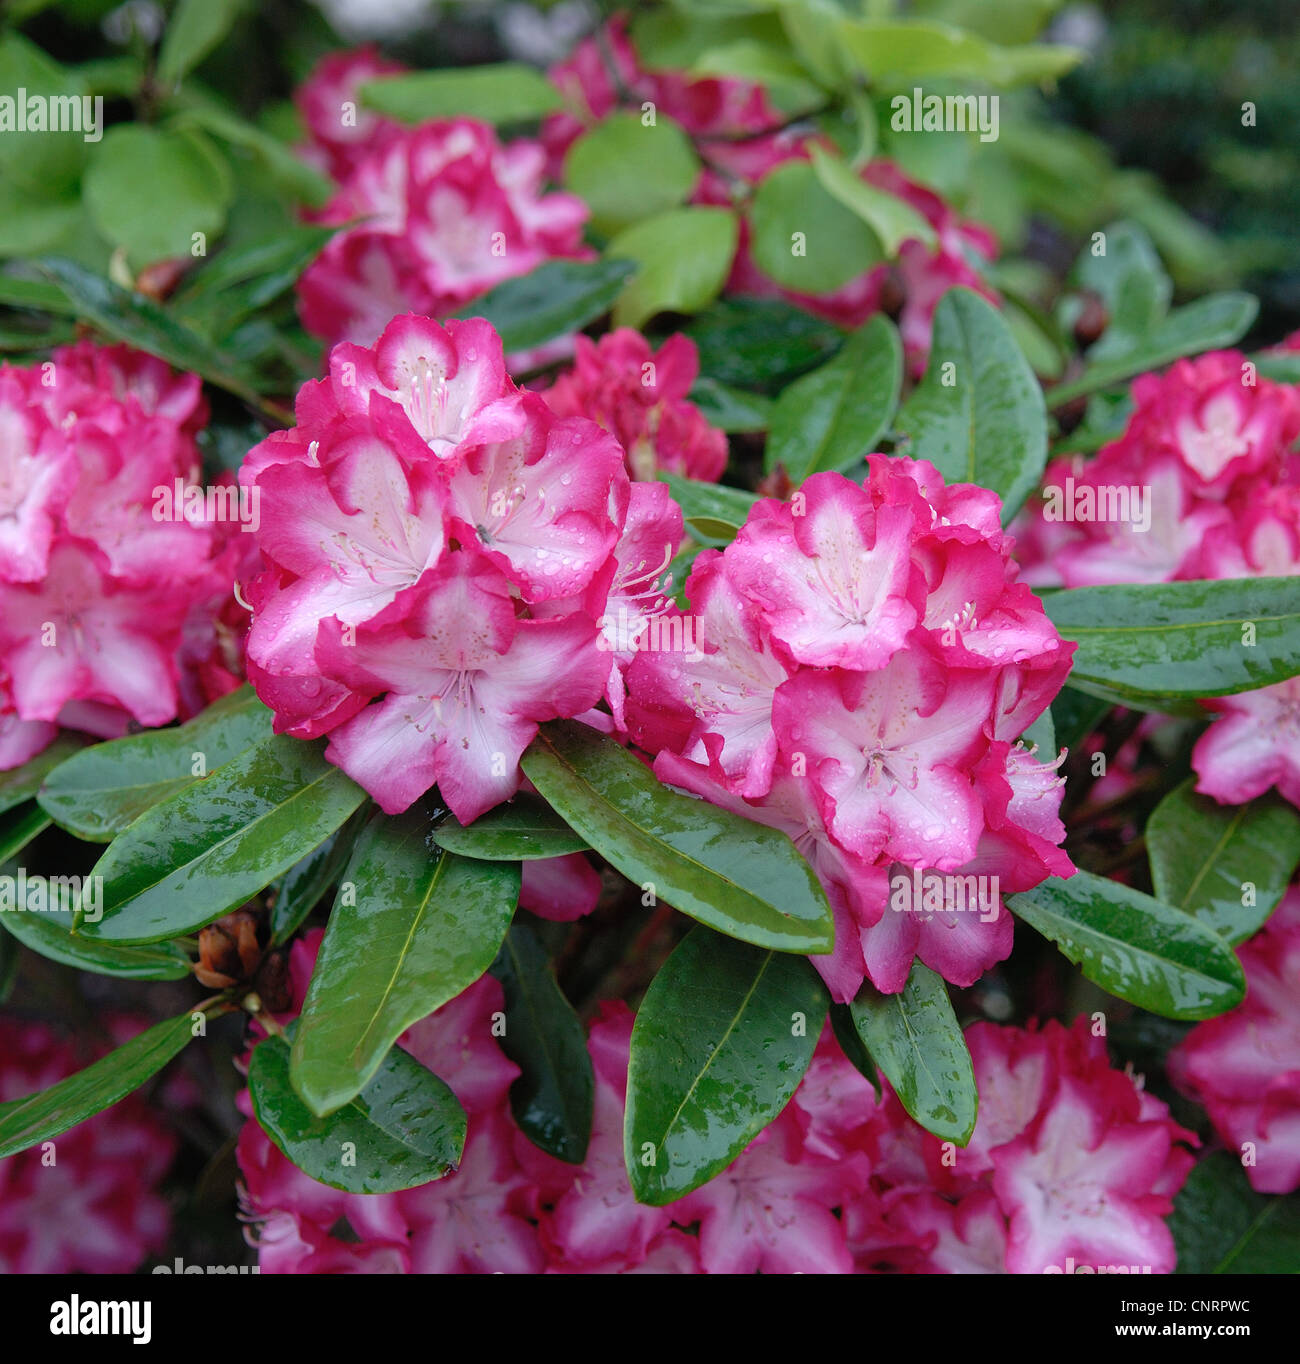 Rhododendron (Rhododendron 'eruzione', rododendro eruzione), cultivar eruzione, fioritura Foto Stock